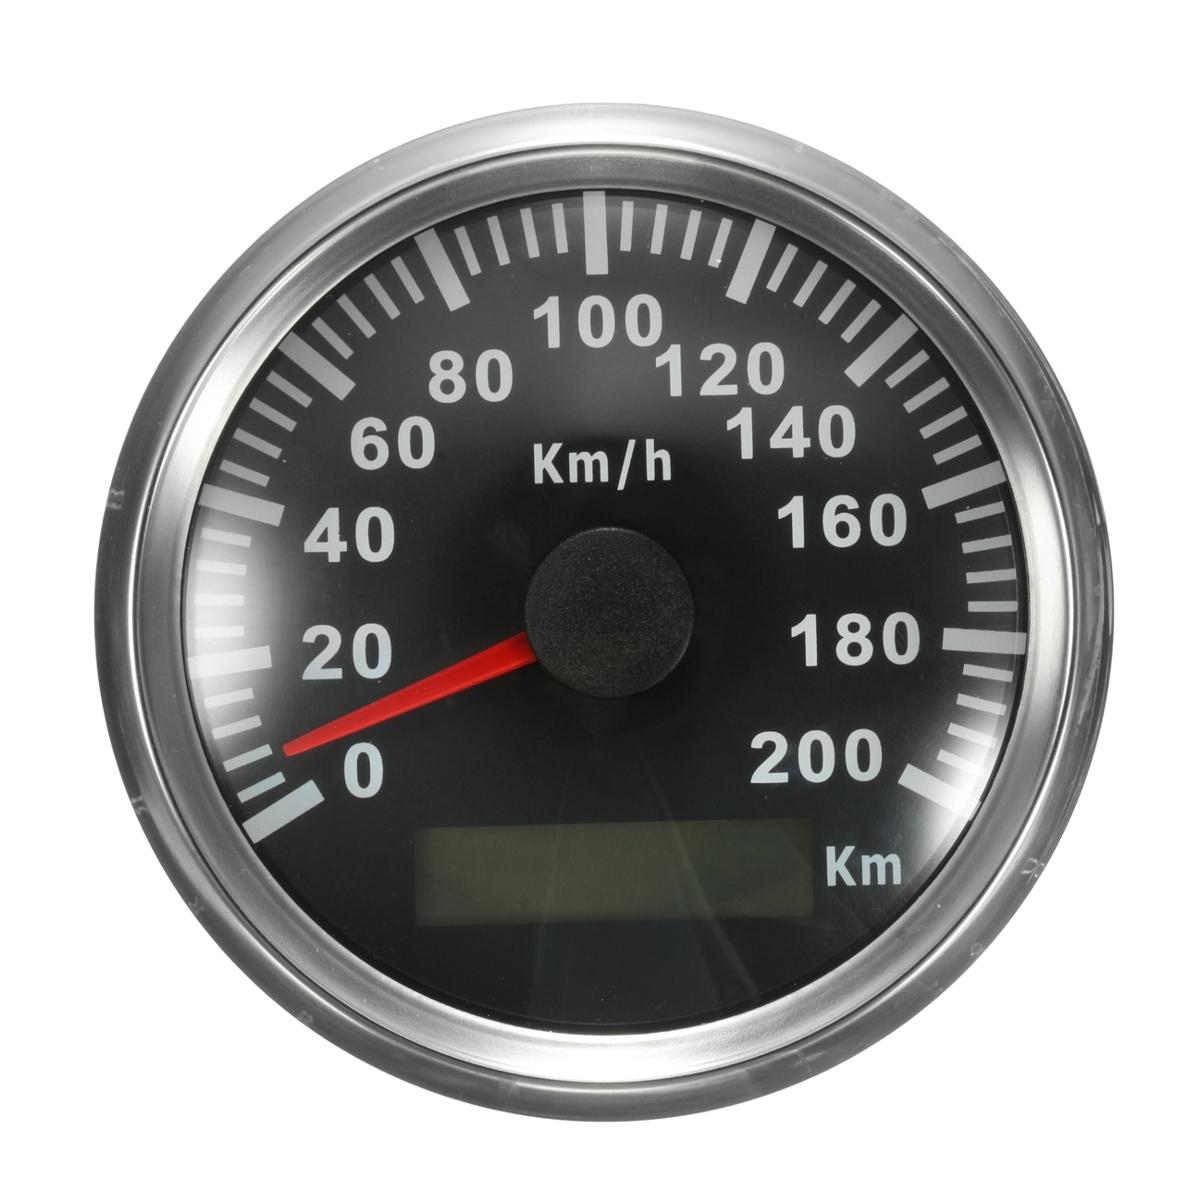 200 KM/H GPS Speedometer Waterproof Digital Gauges Car Motorcycle Auto Stainless